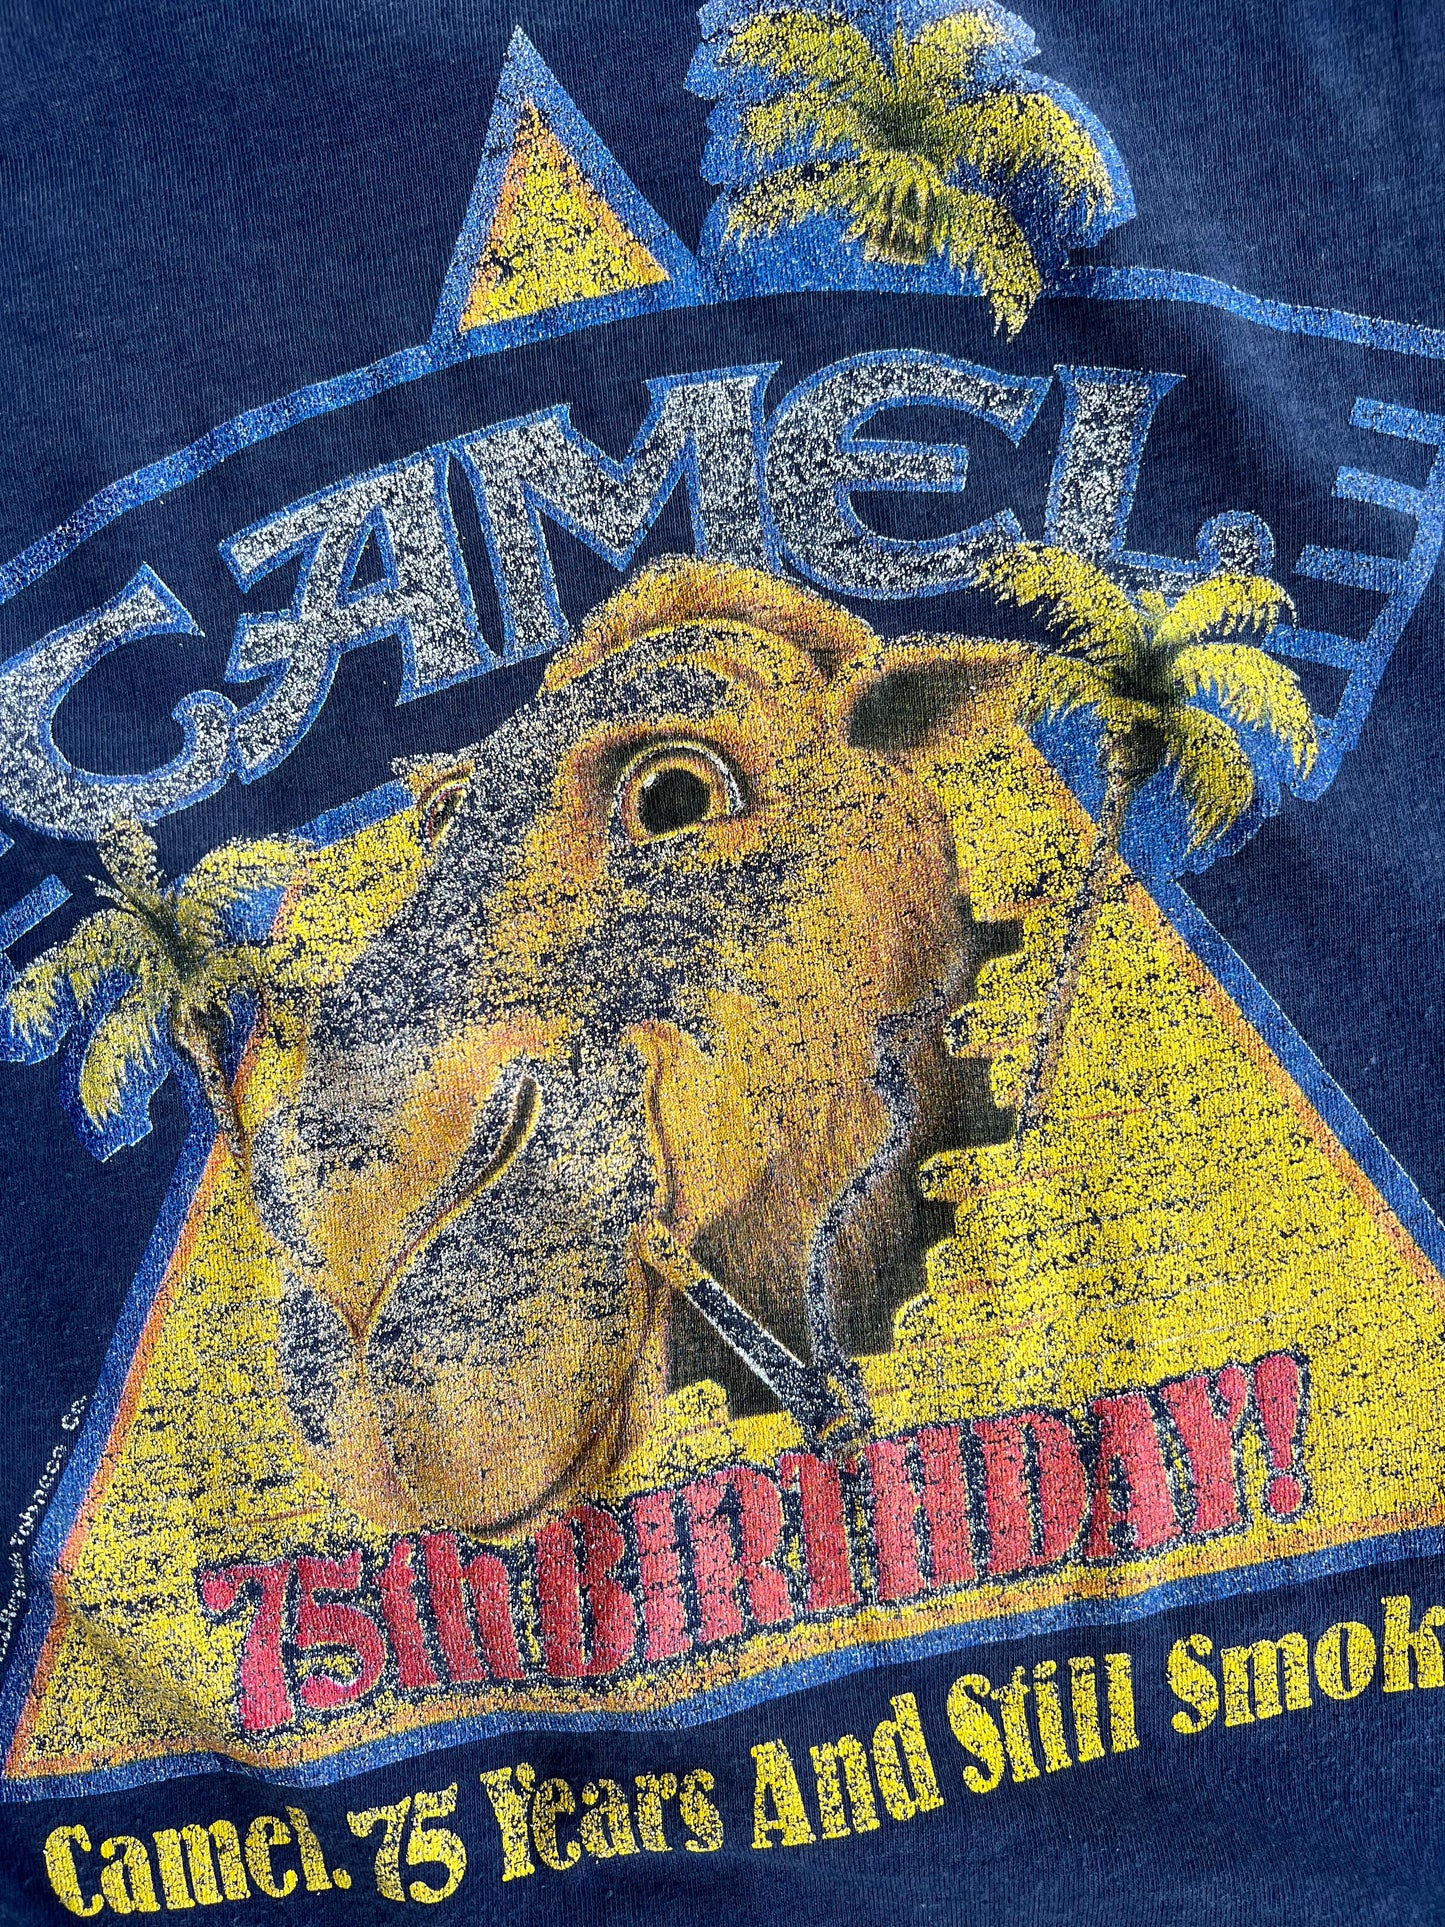 Vintage Navy Camel Shirt - L